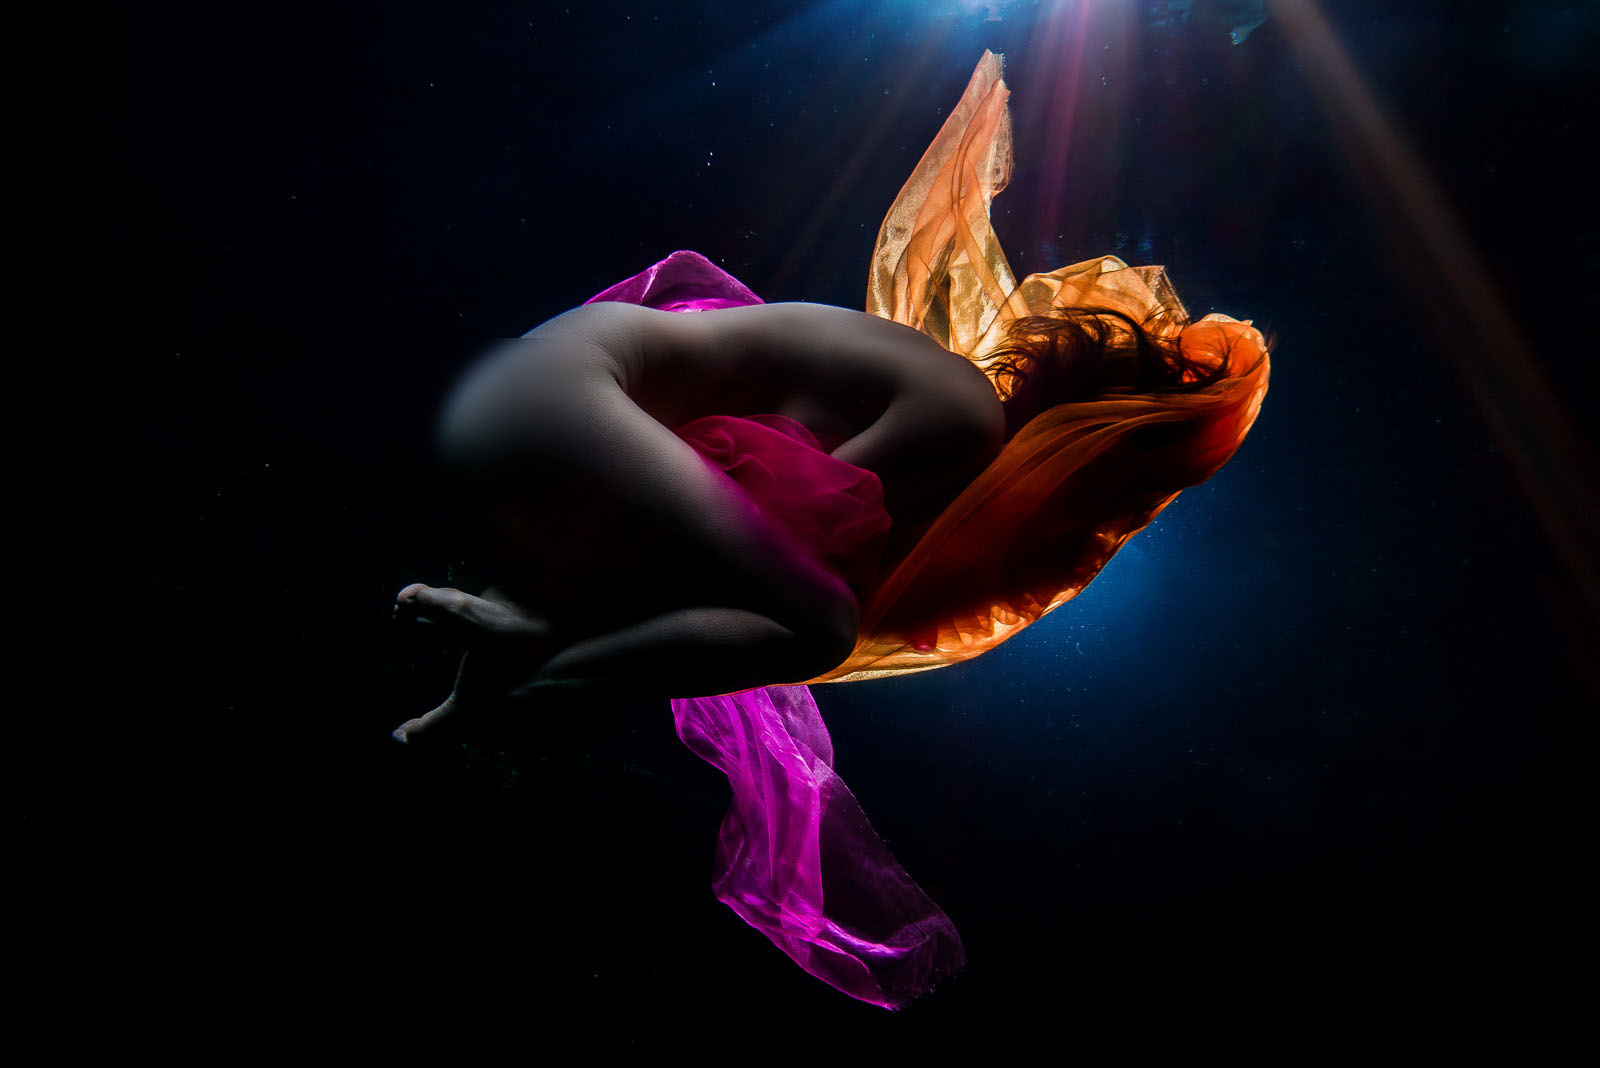 Underwater nude model